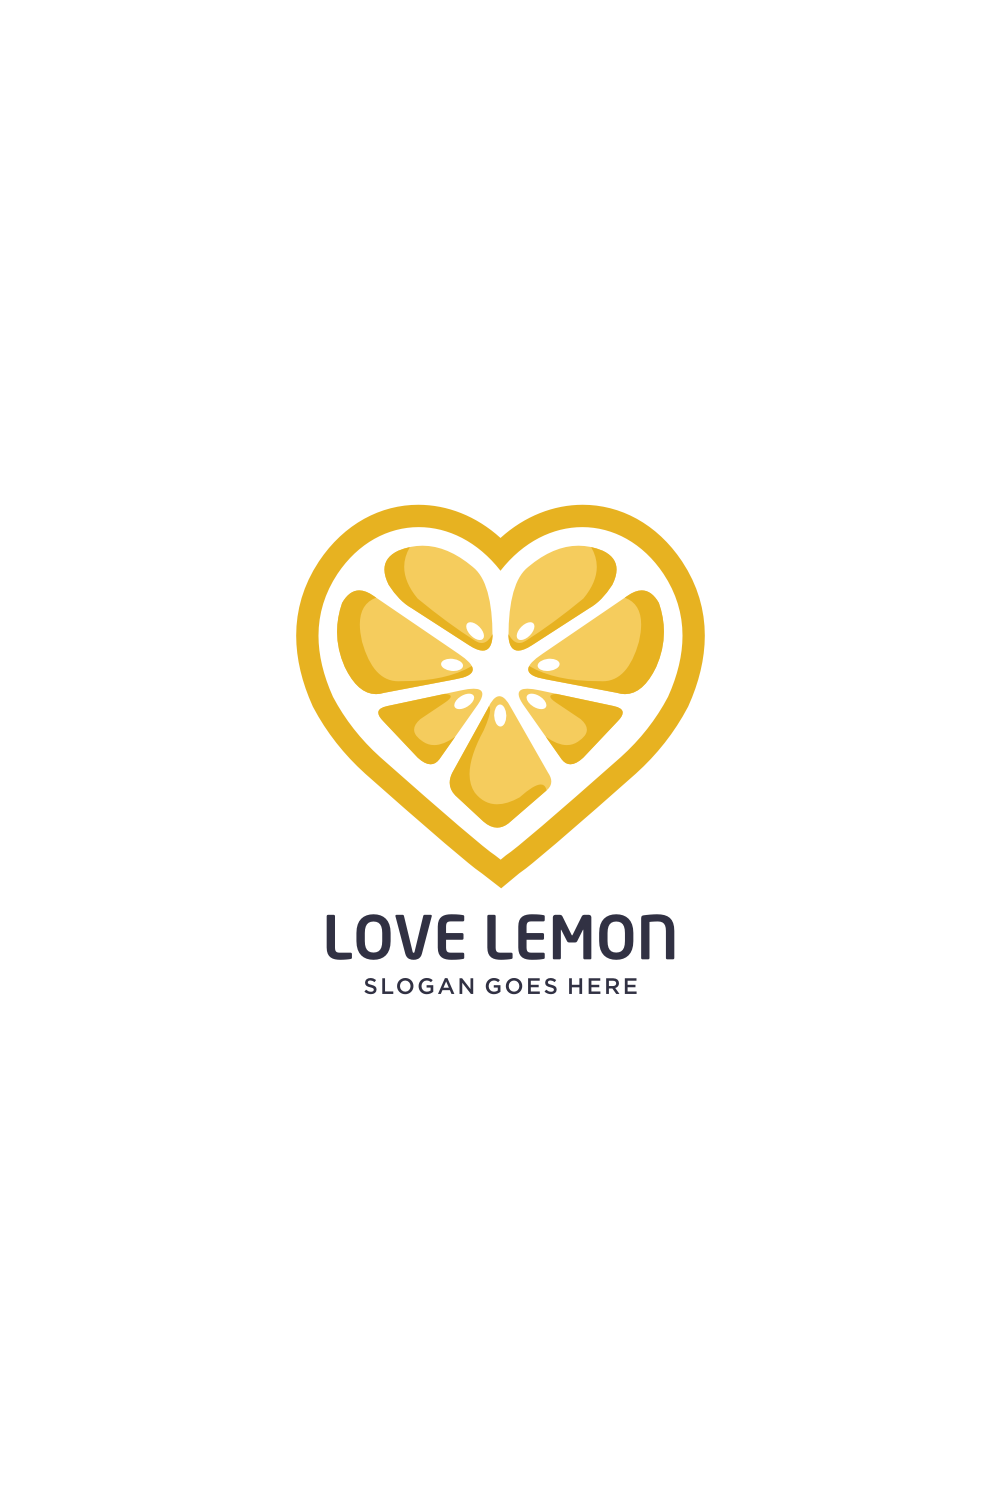 Lemon Heart Logo Vector Designs Pinterest preview.